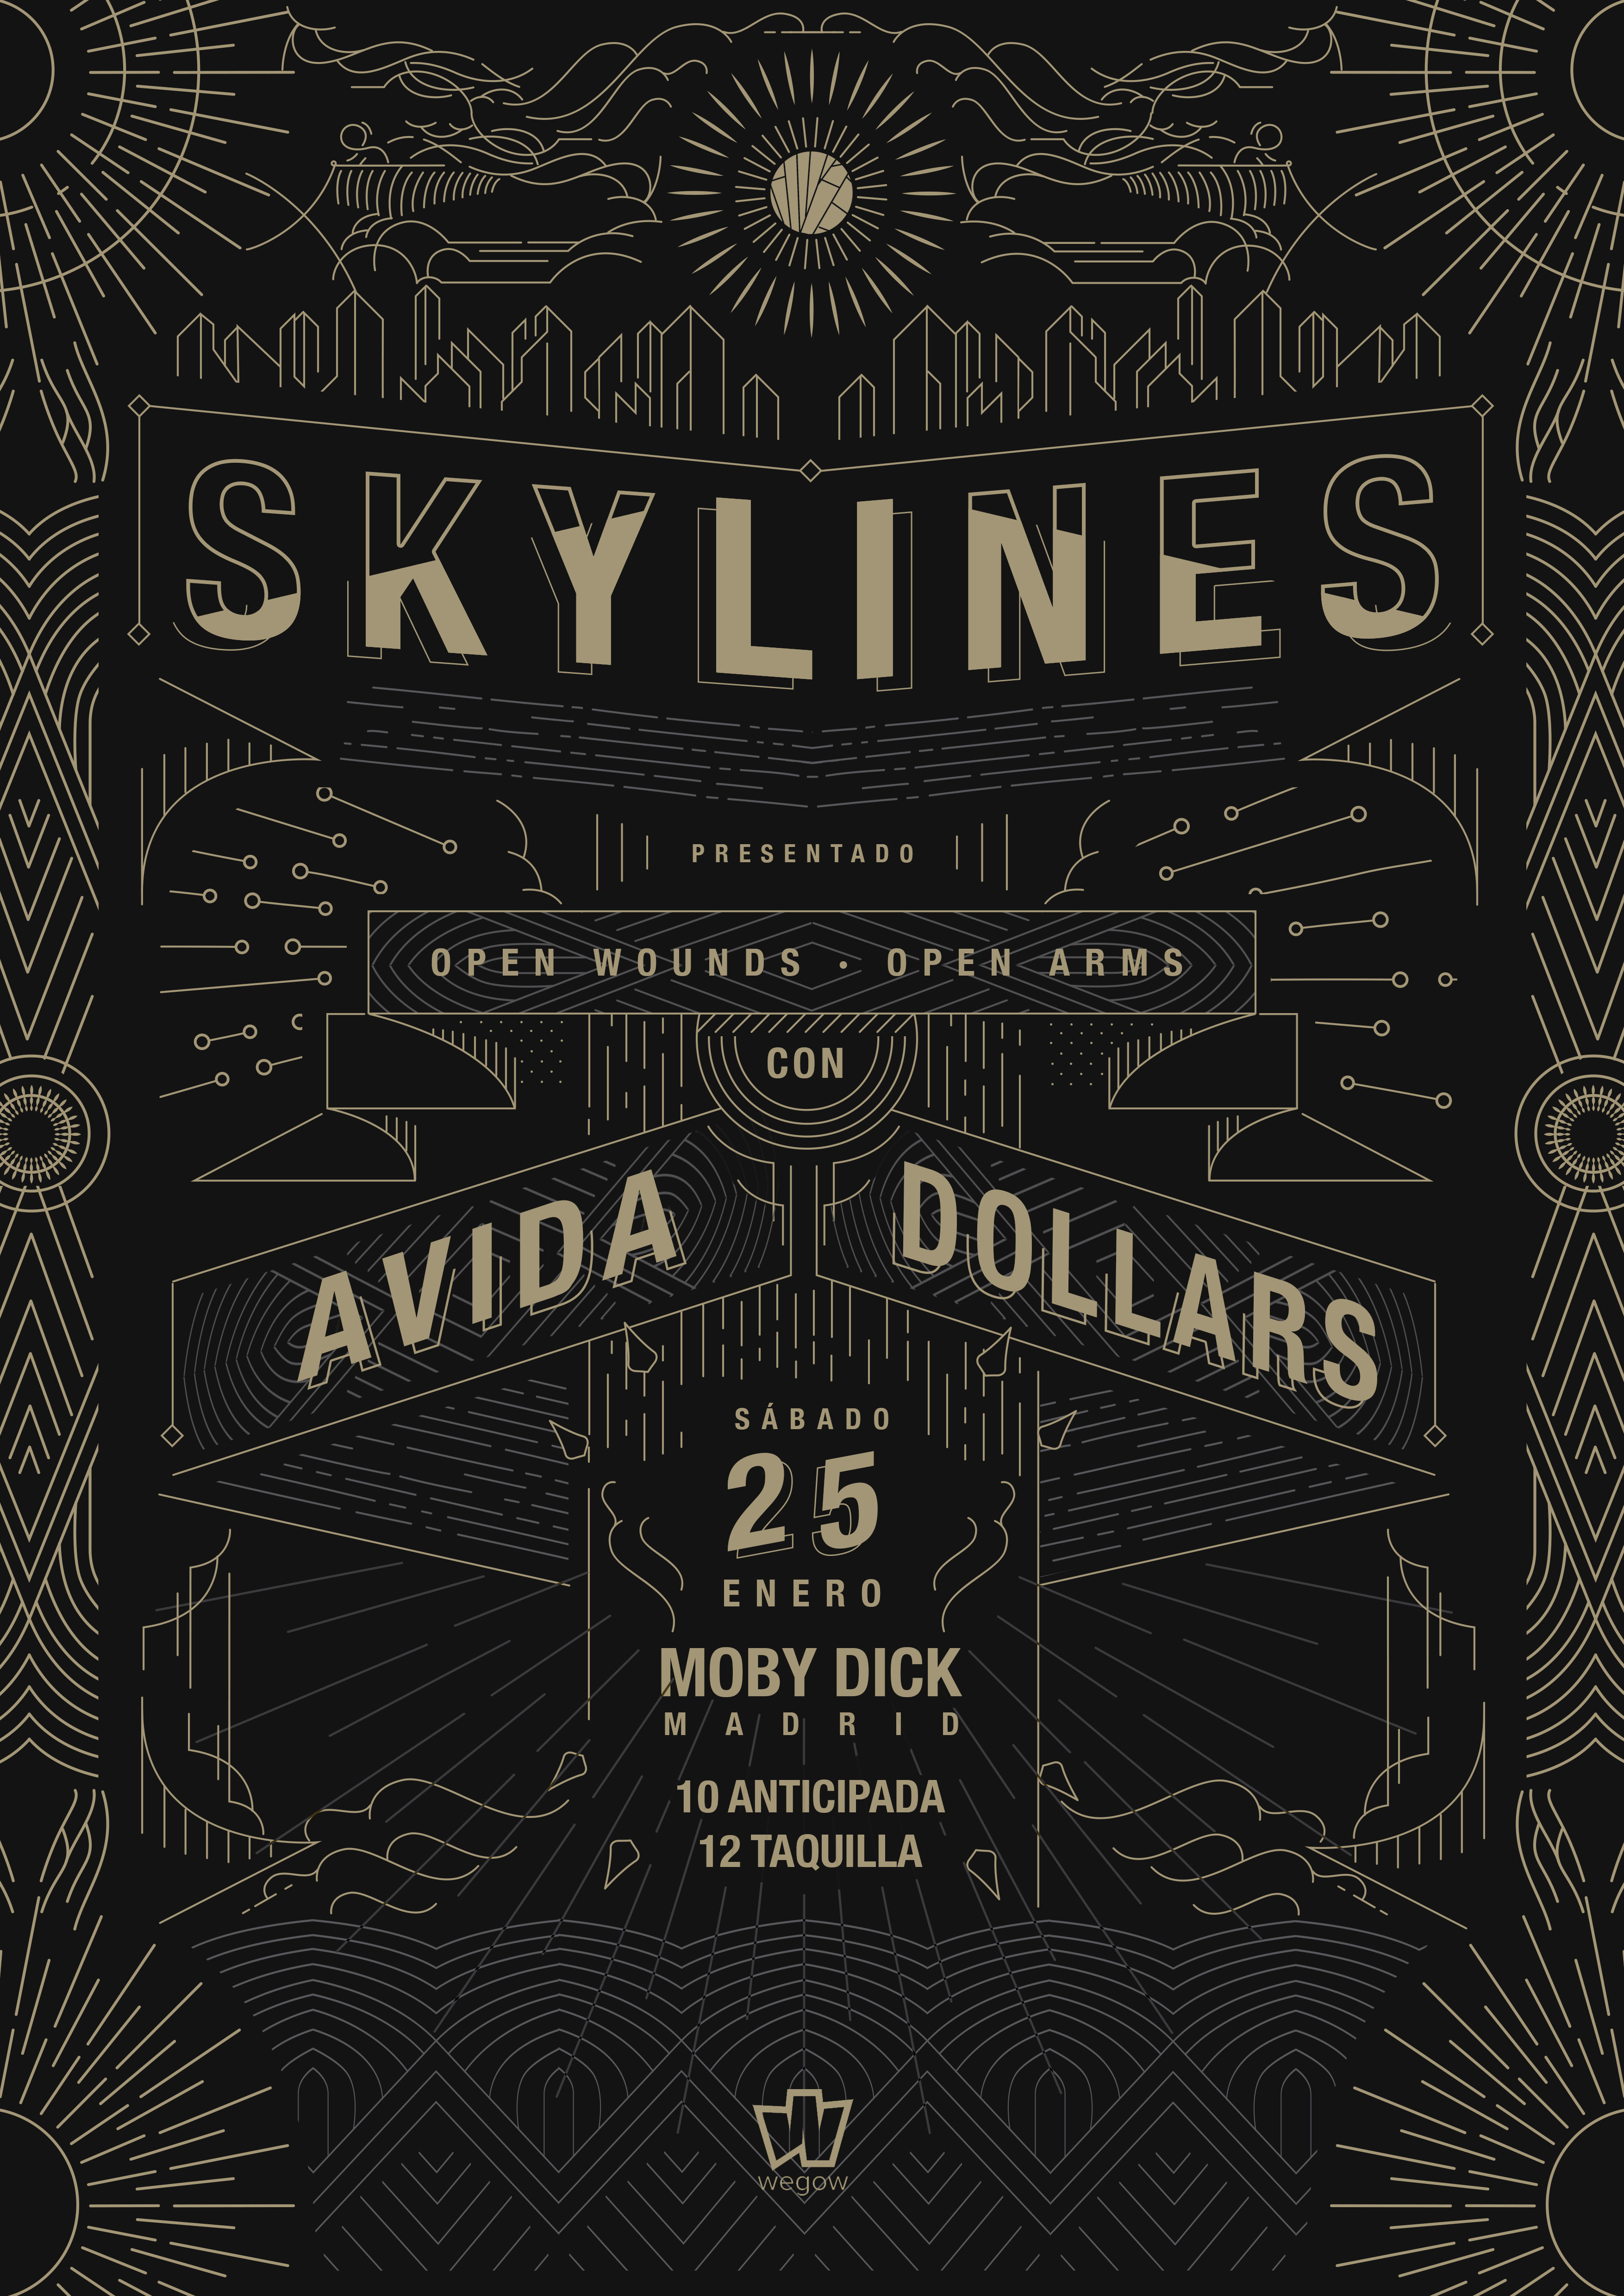 Skylines + Avida Dollars concert in Madrid